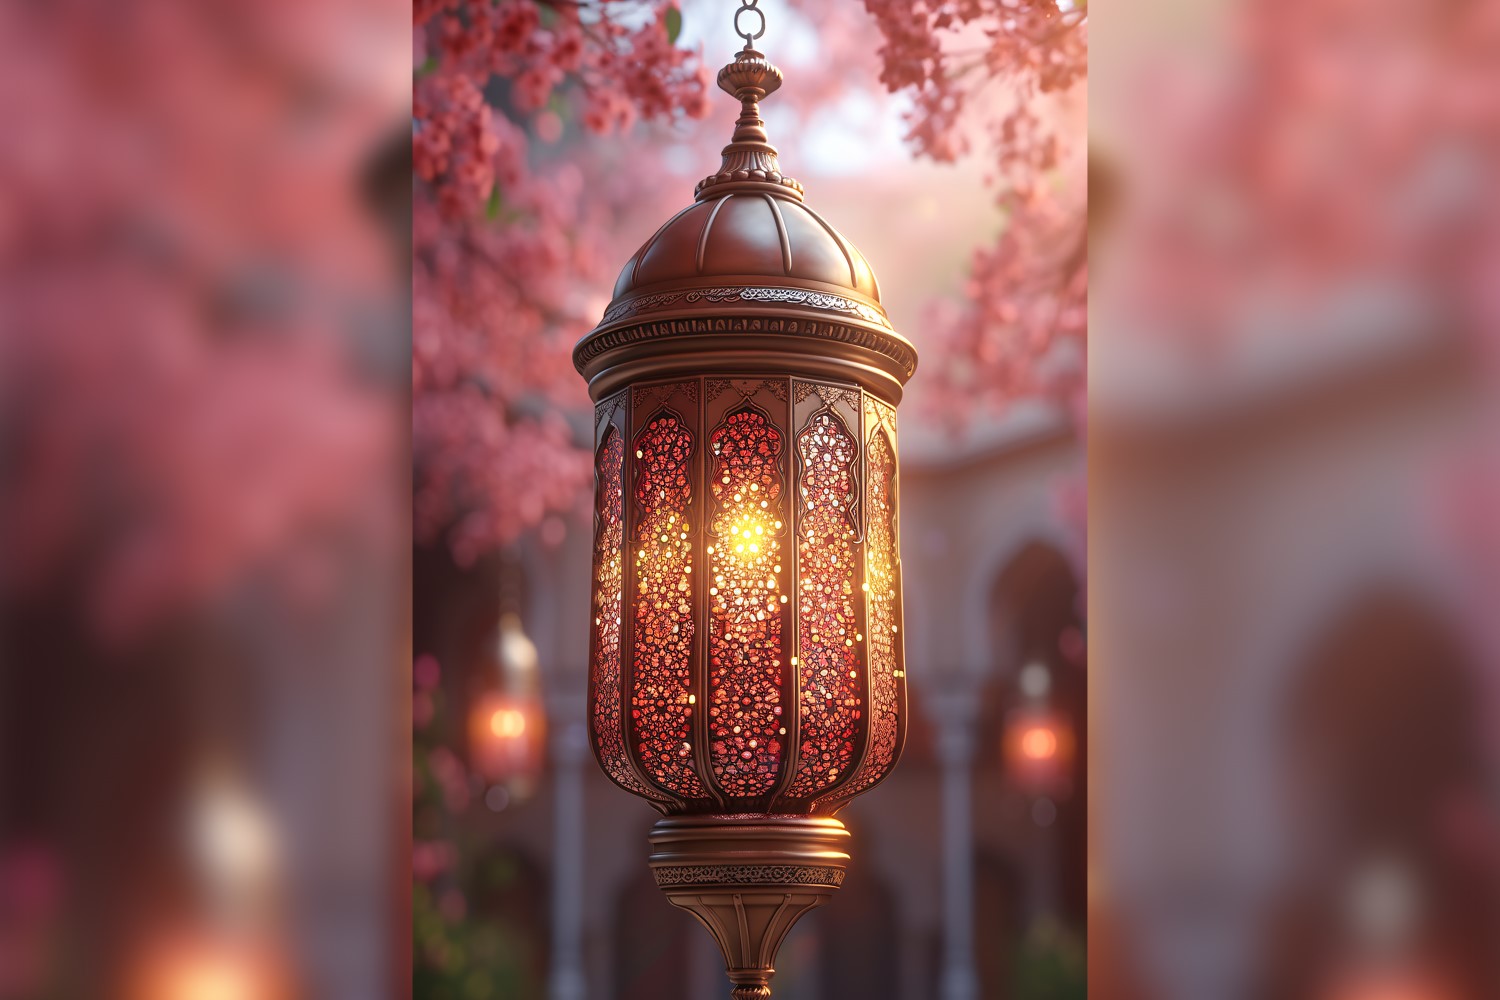 Ramadan Kareem greeting card poster design with lantern & flower 01